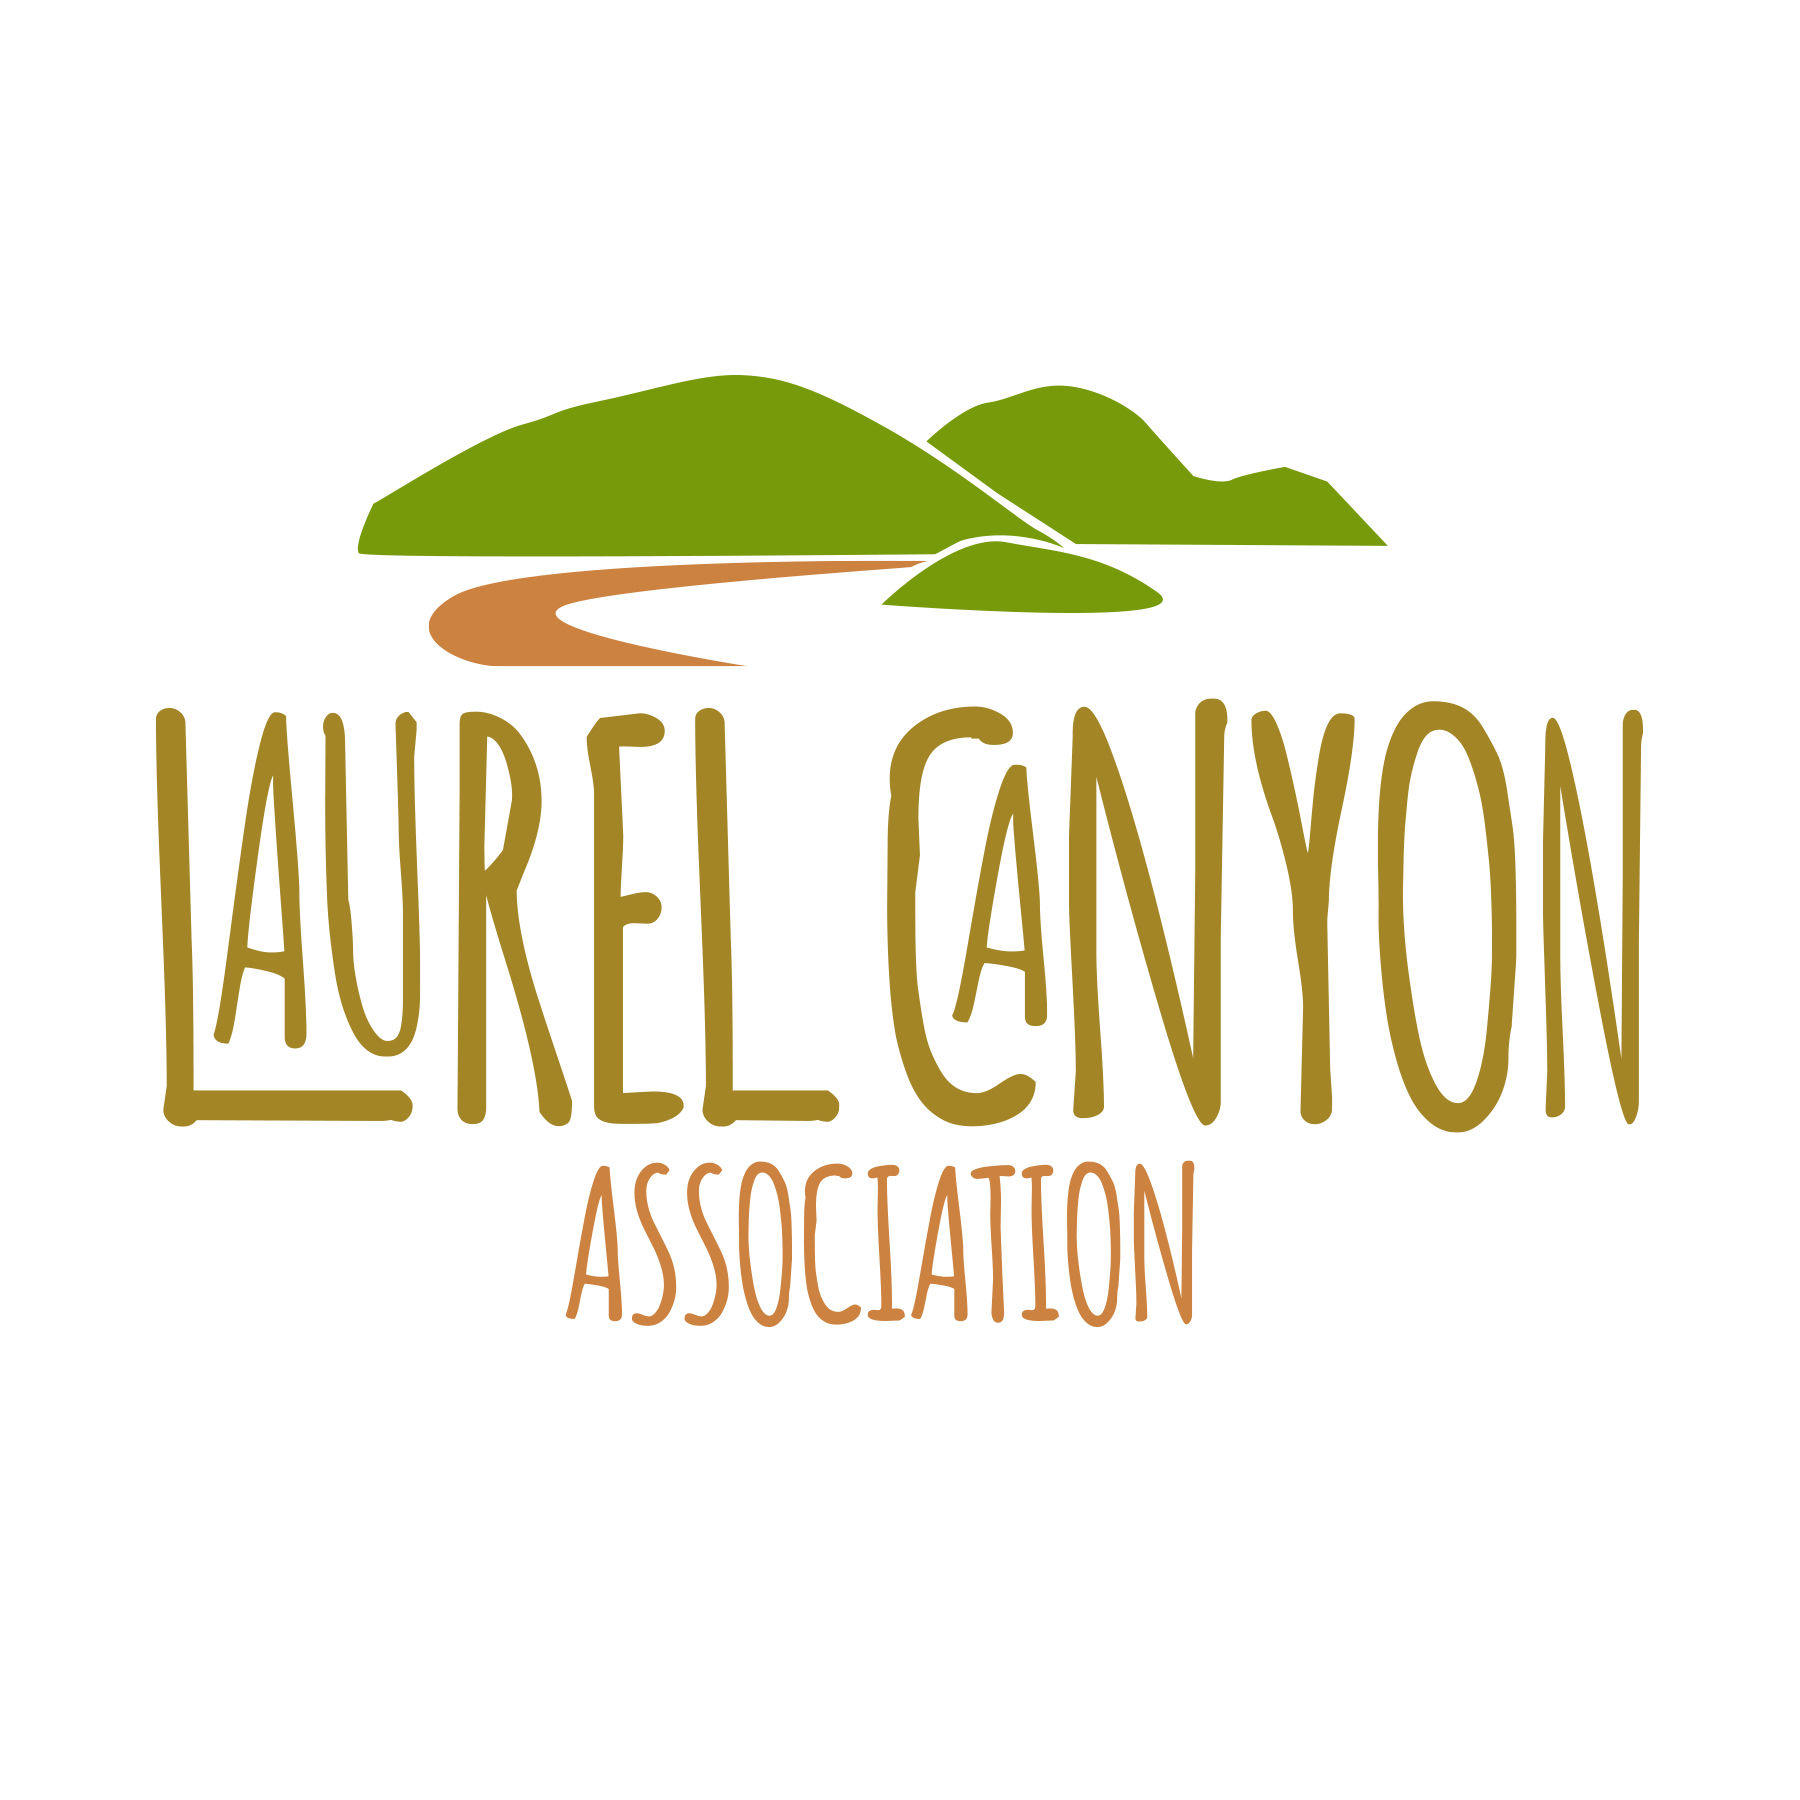 Laurel Canyon Association logo